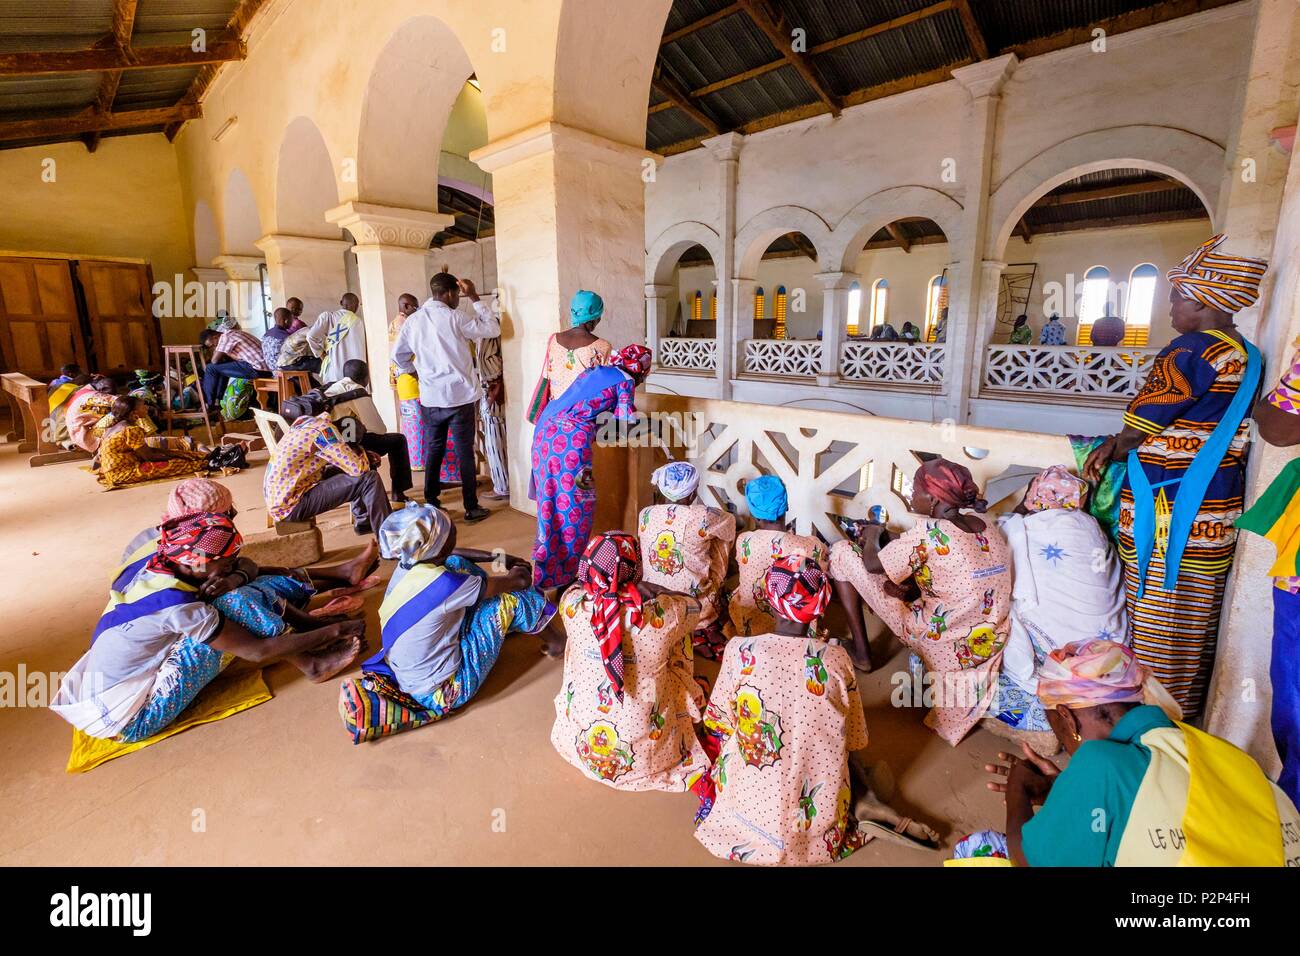 Le Burkina Faso, région Centre, Ouagadougou, cérémonie religieuse à la Cathédrale de l'Immaculée Conception Banque D'Images